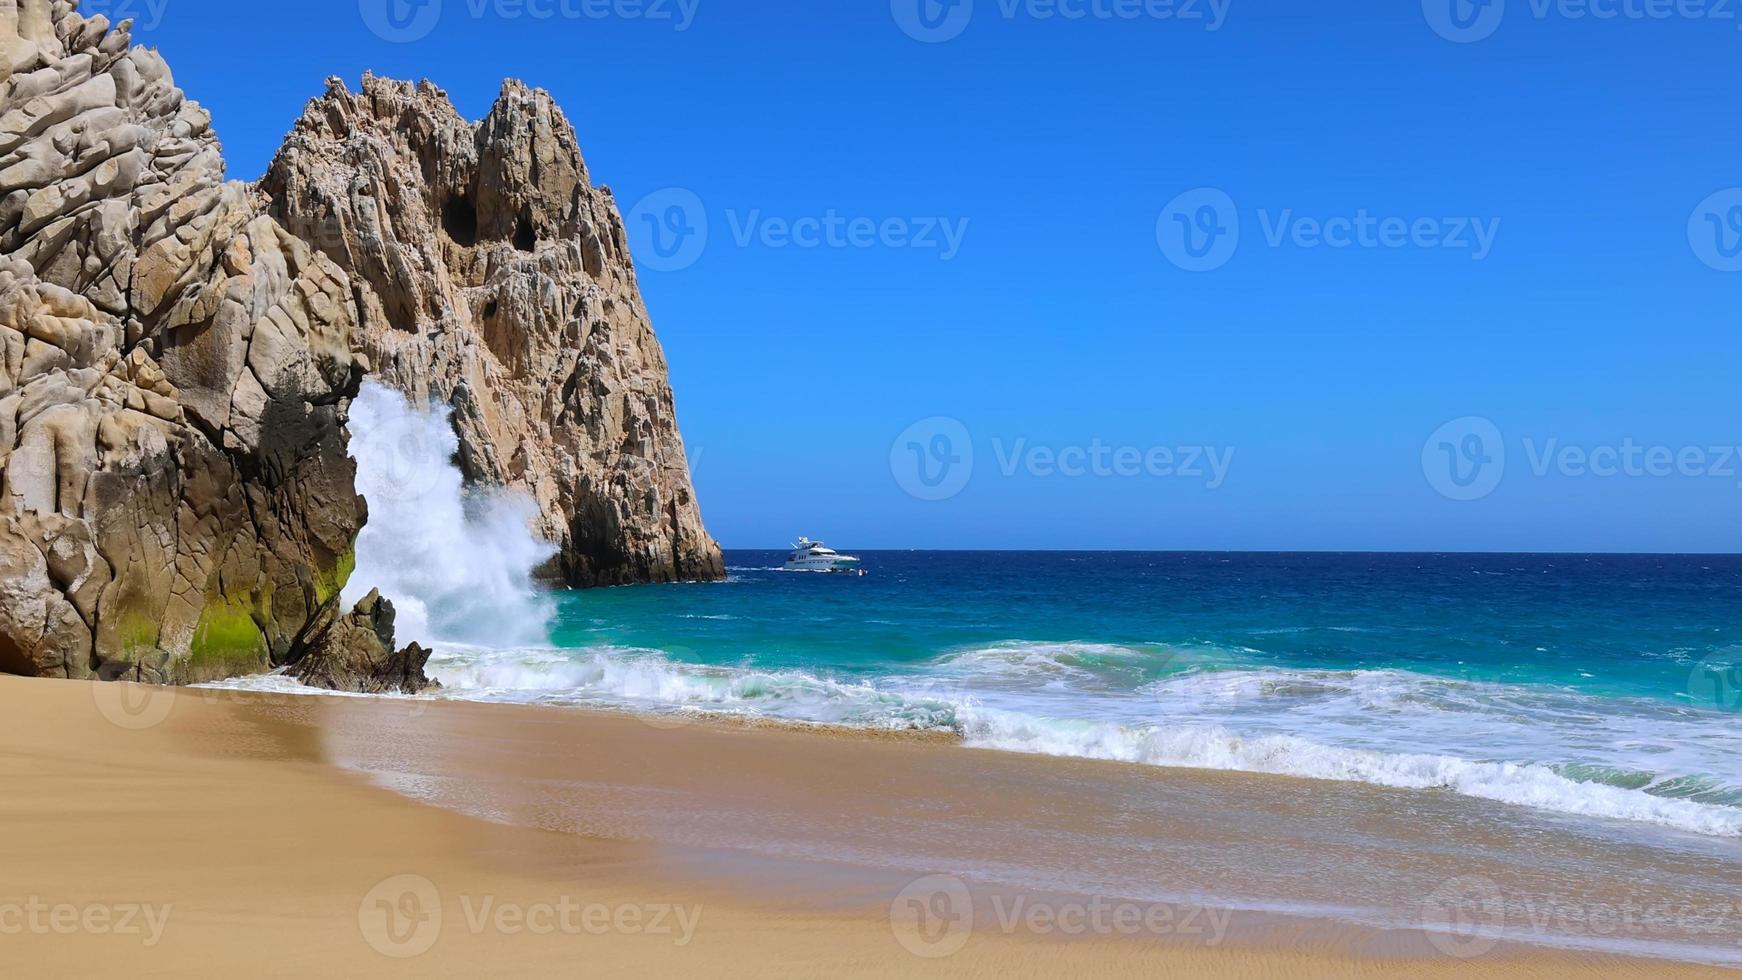 destino de viaje escénico playa del divorcio, playa de divorcio ubicada cerca del arco escénico de cabo san lucas foto